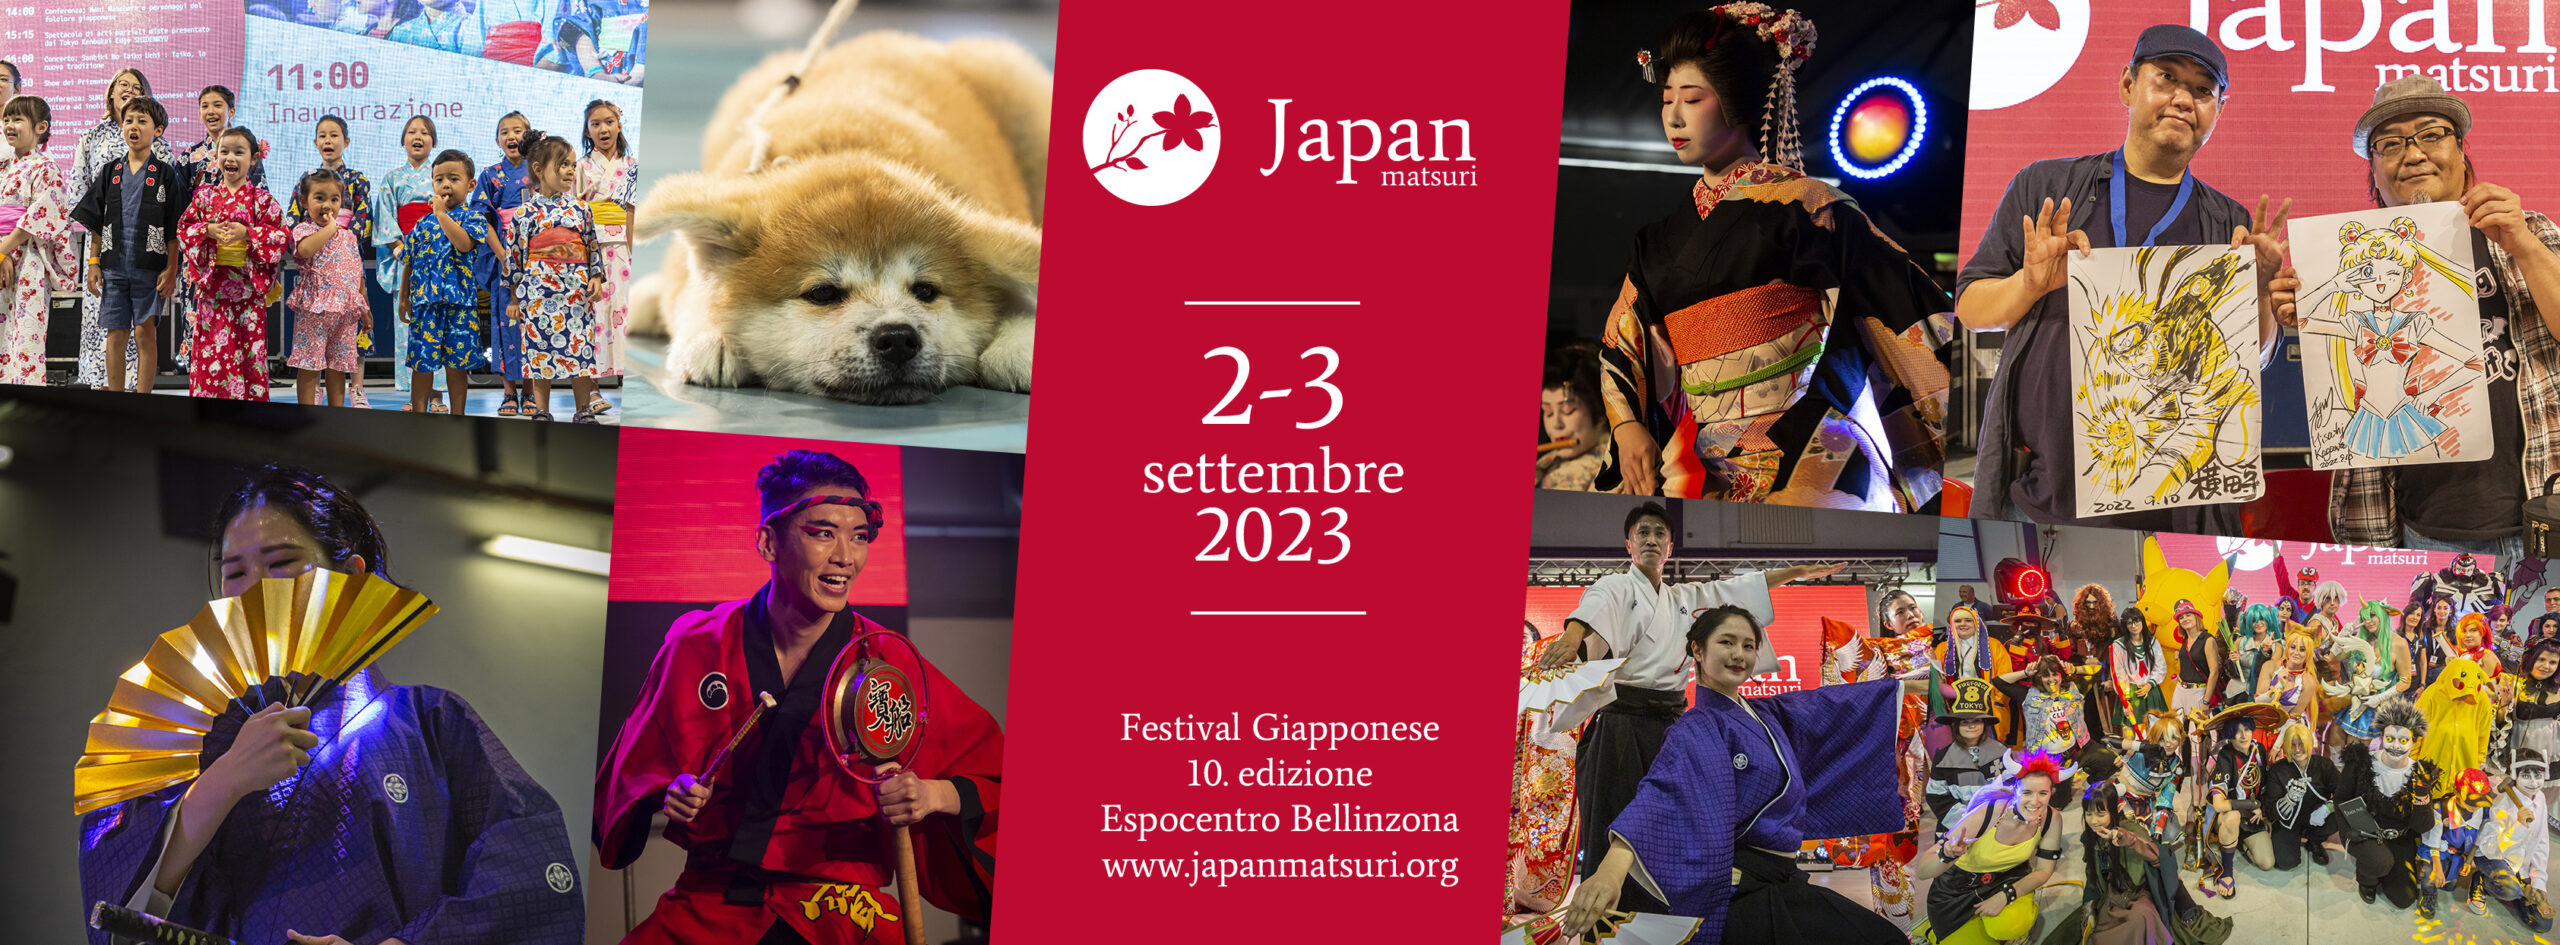 La decima edizione del Festival Giapponese “Japan Matsuri”: 2-3 settembre 2023